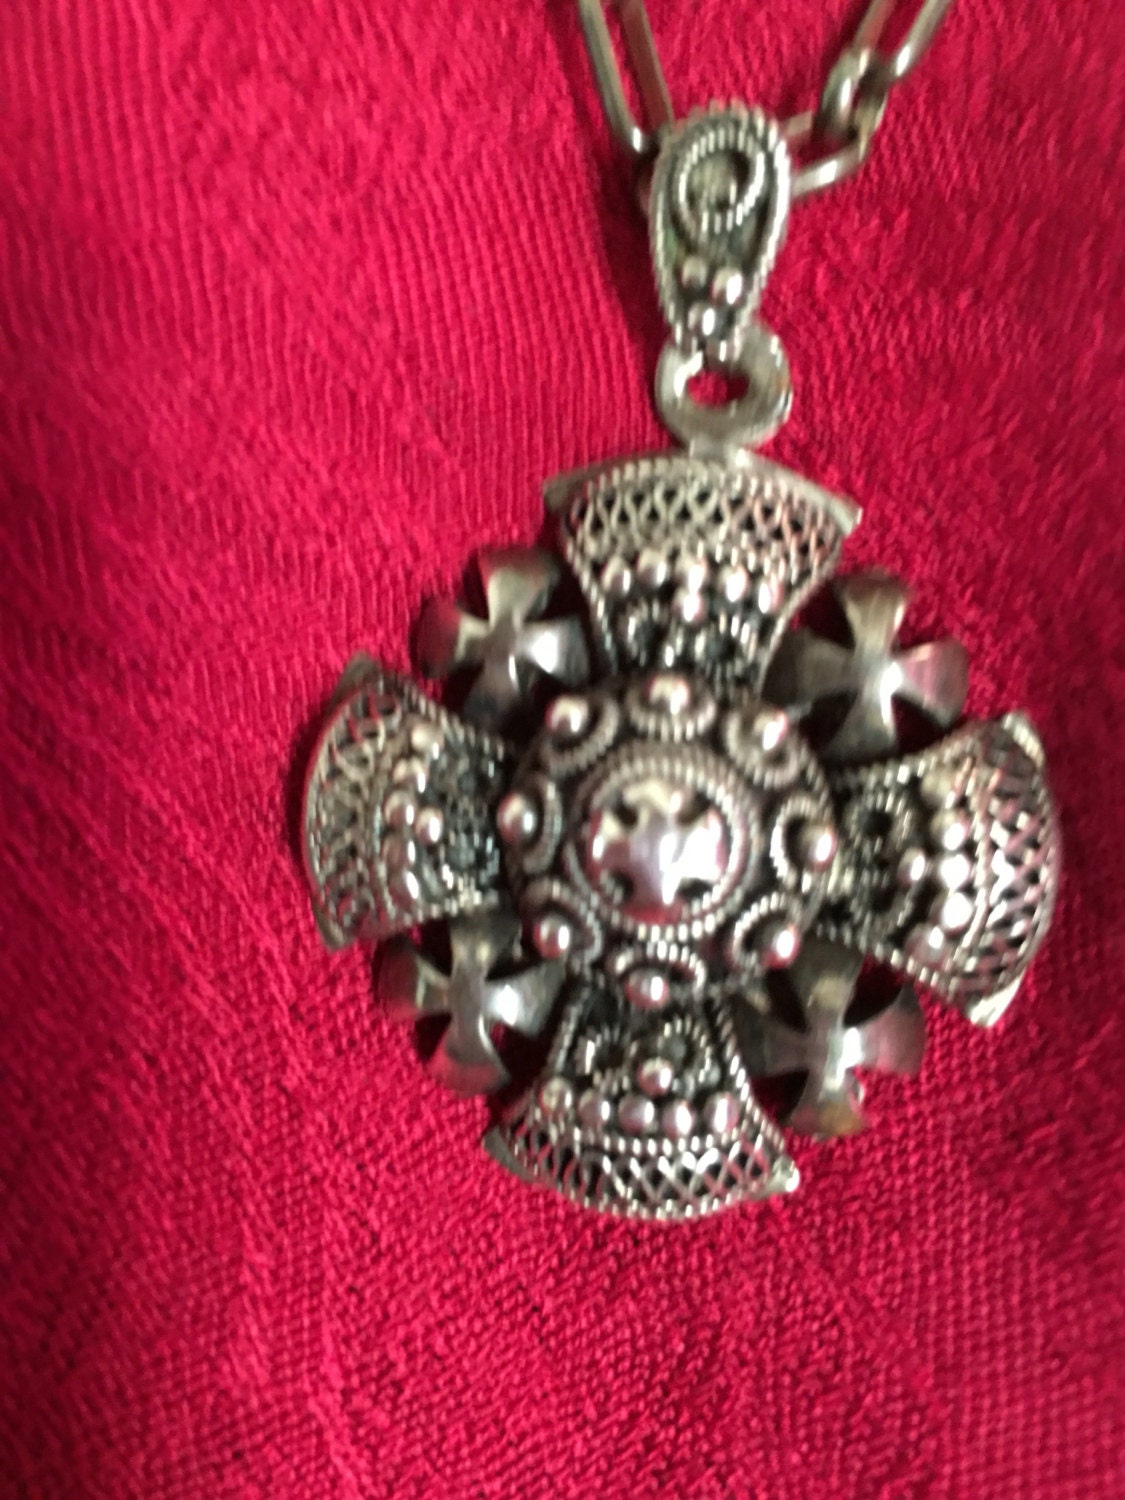 Jerusalem silver 1000 cross necklace